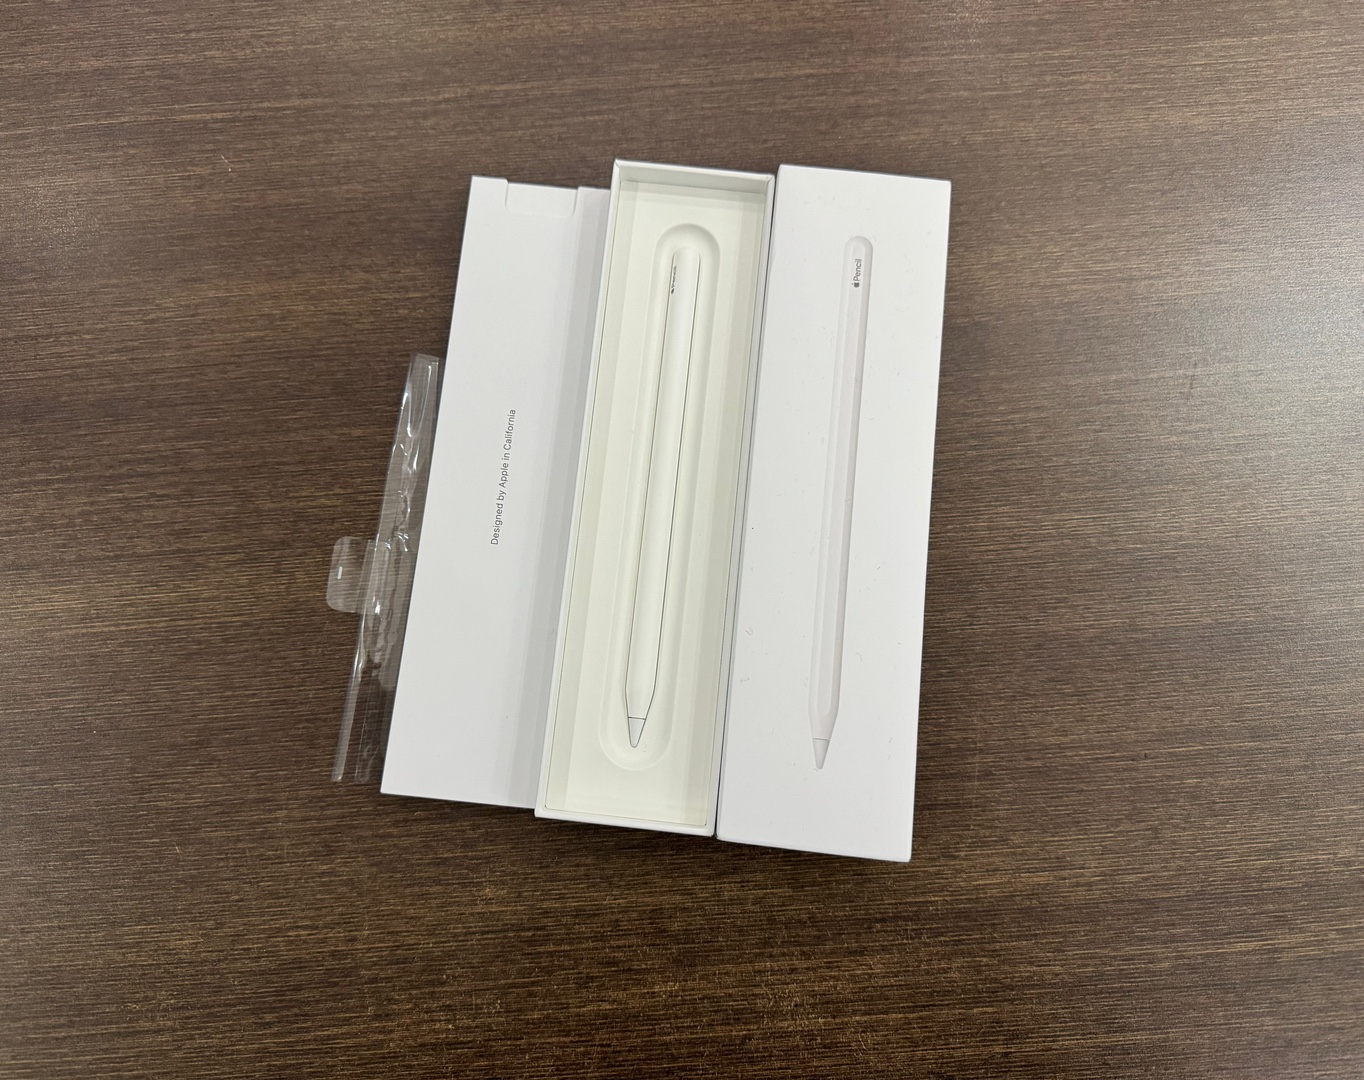 accesorios para electronica - Apple Pencil 2da Generación Como Nuevo, 100% Original , RD$ 5,500 NEG